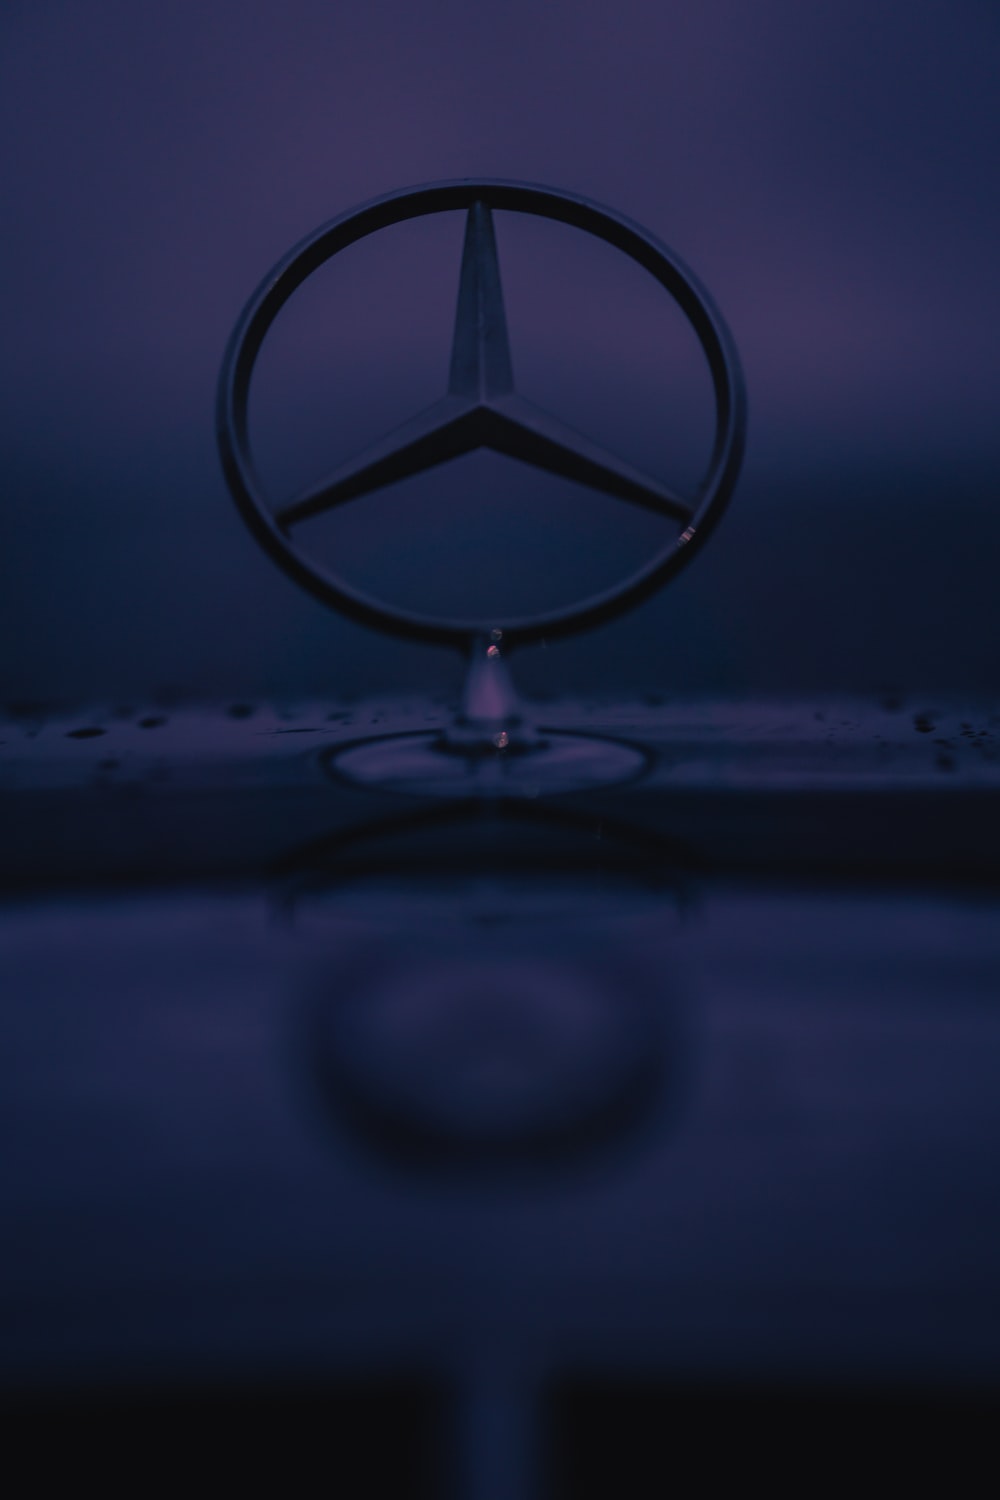 Mercedes-Benz S-Class Wallpapers